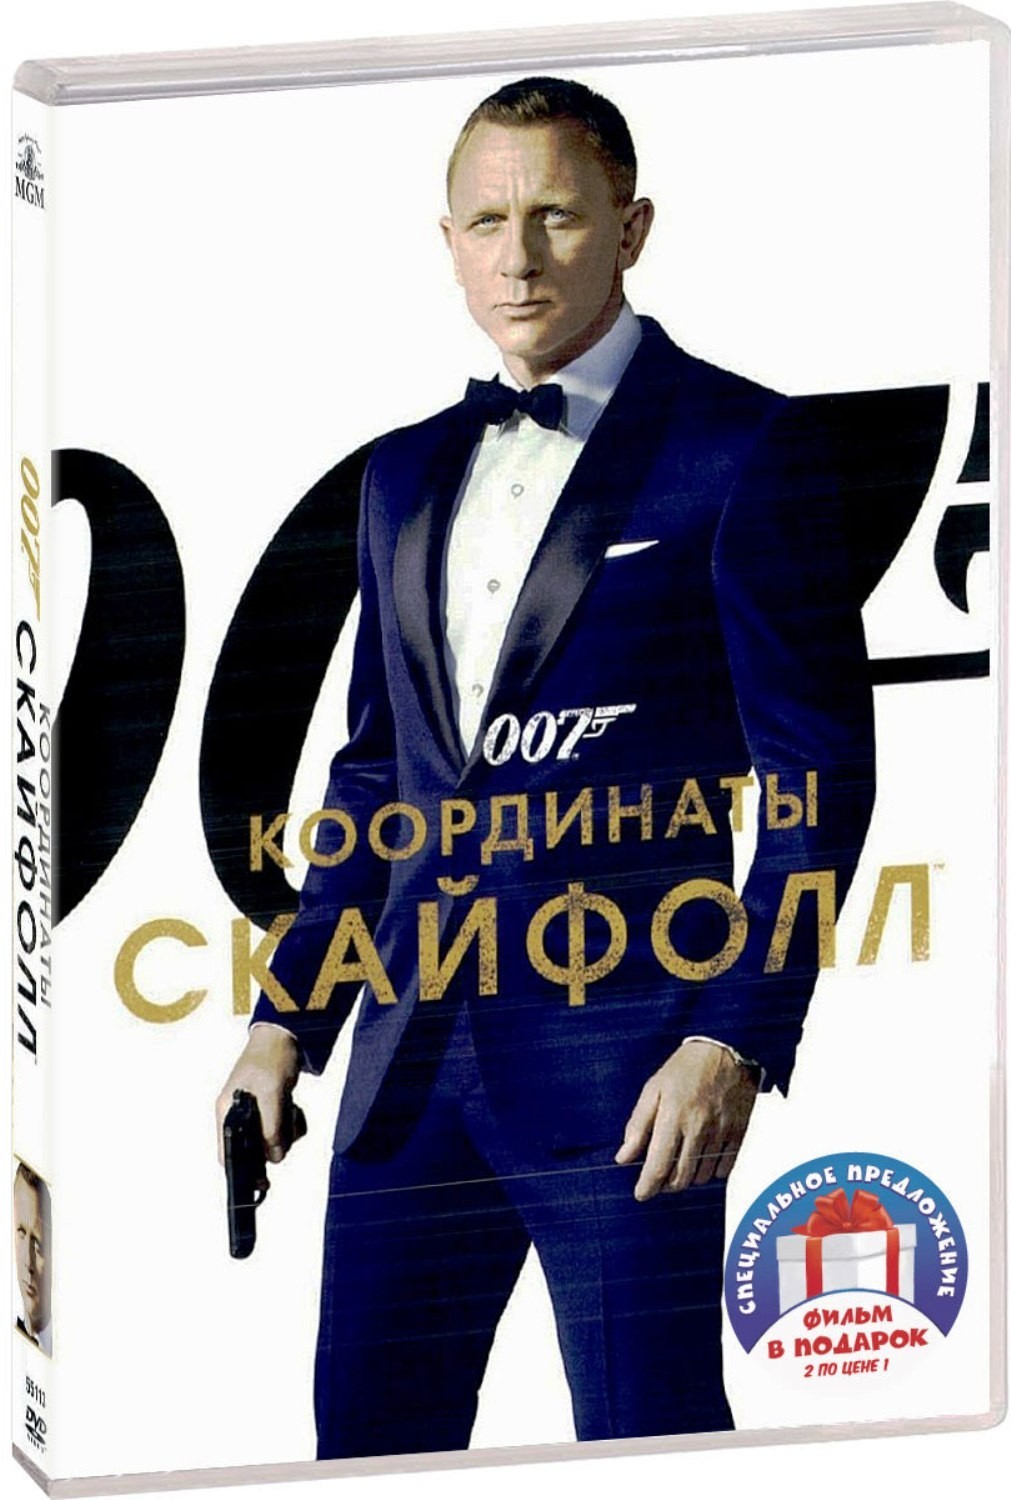 007: Координаты «Скайфолл» / Спектр (2 DVD)